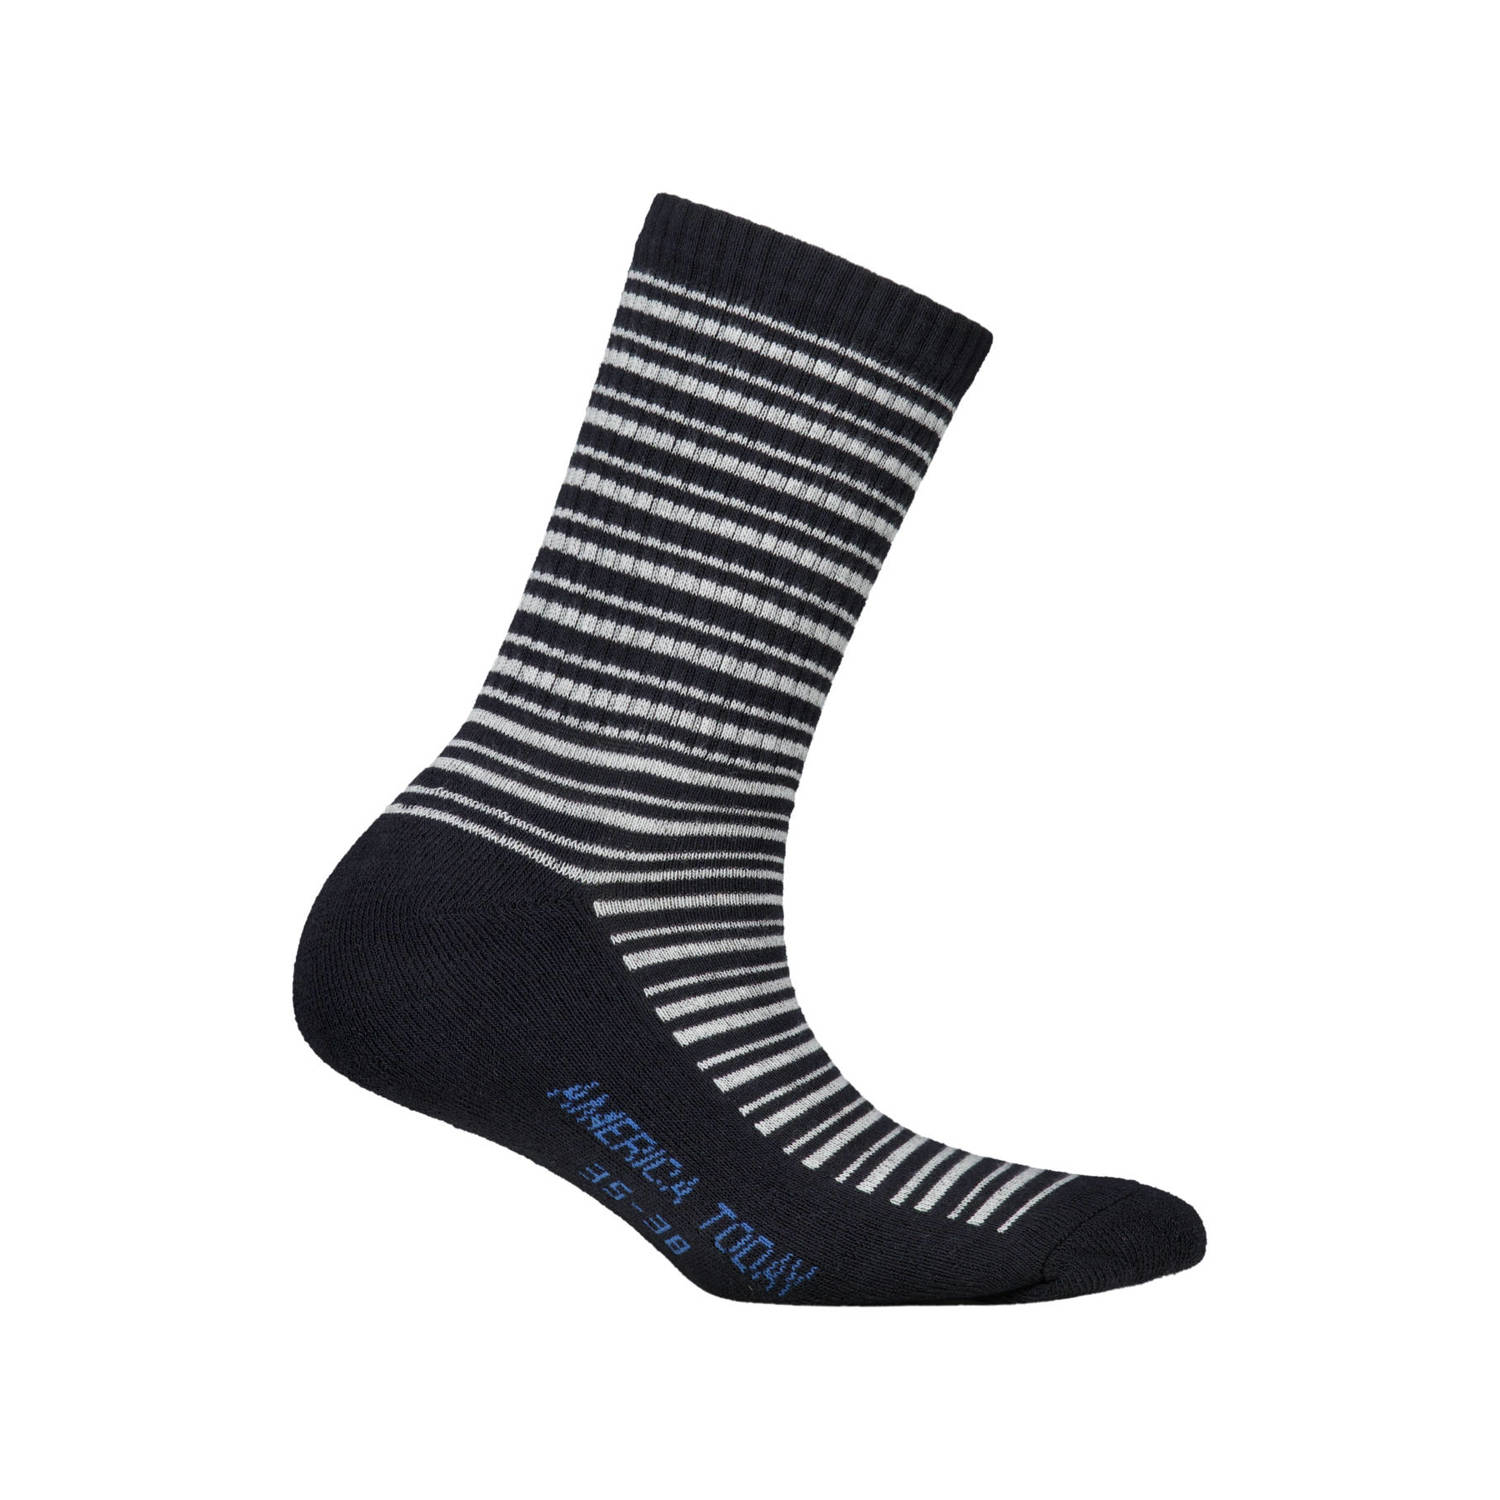 America Today sokken met streep zwart wit Biologisch katoen 31 34